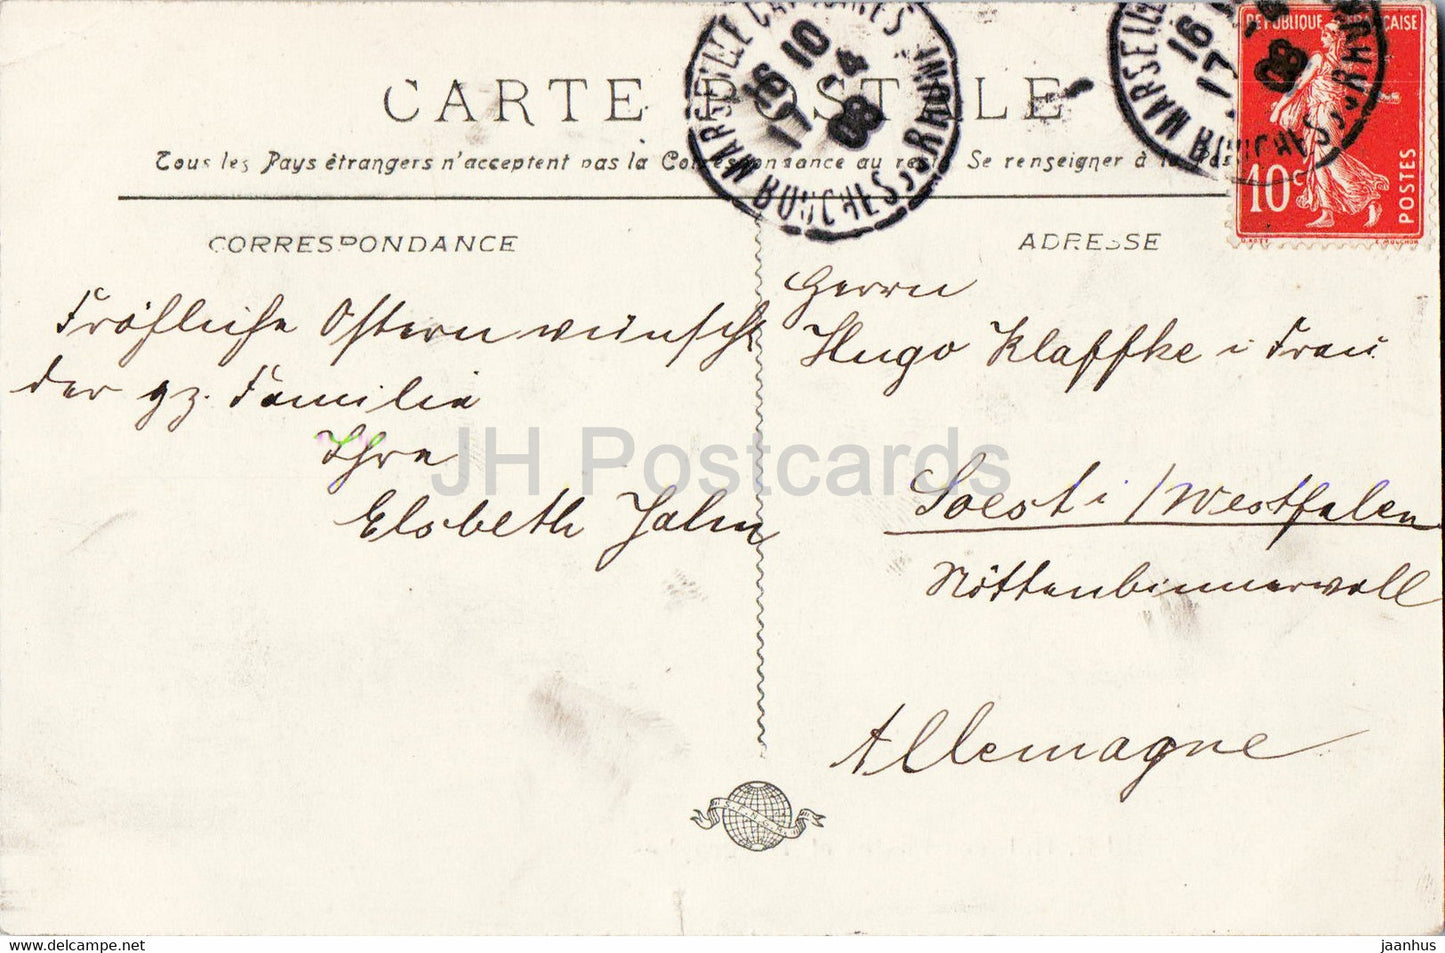 Marseille - Hot des Postes et Telegraphes - Postamt - Telegraph - 5 - alte Postkarte - 1908 - Frankreich - gebraucht